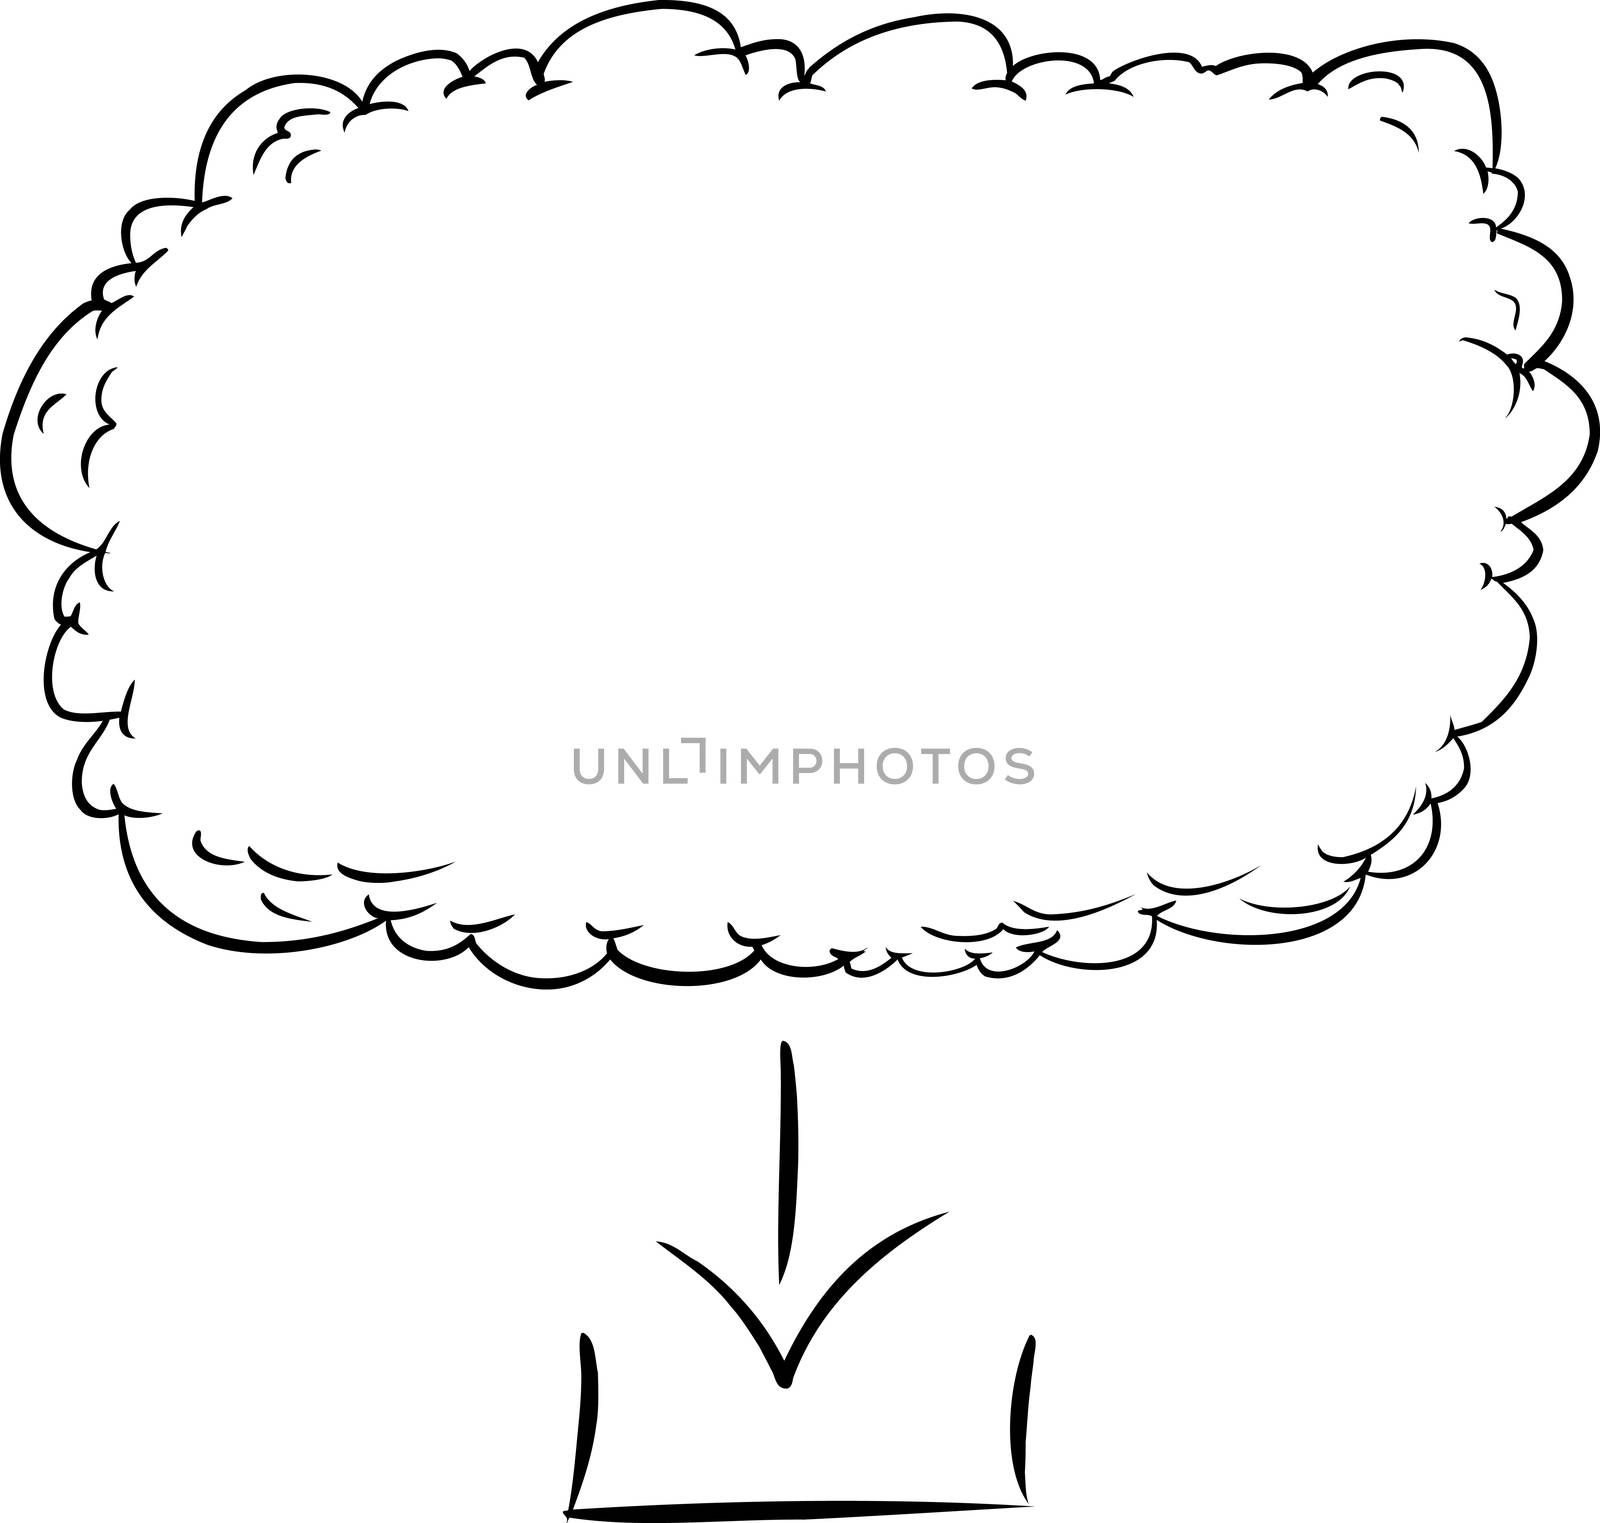 Outline illustration of digital download from cloud based server